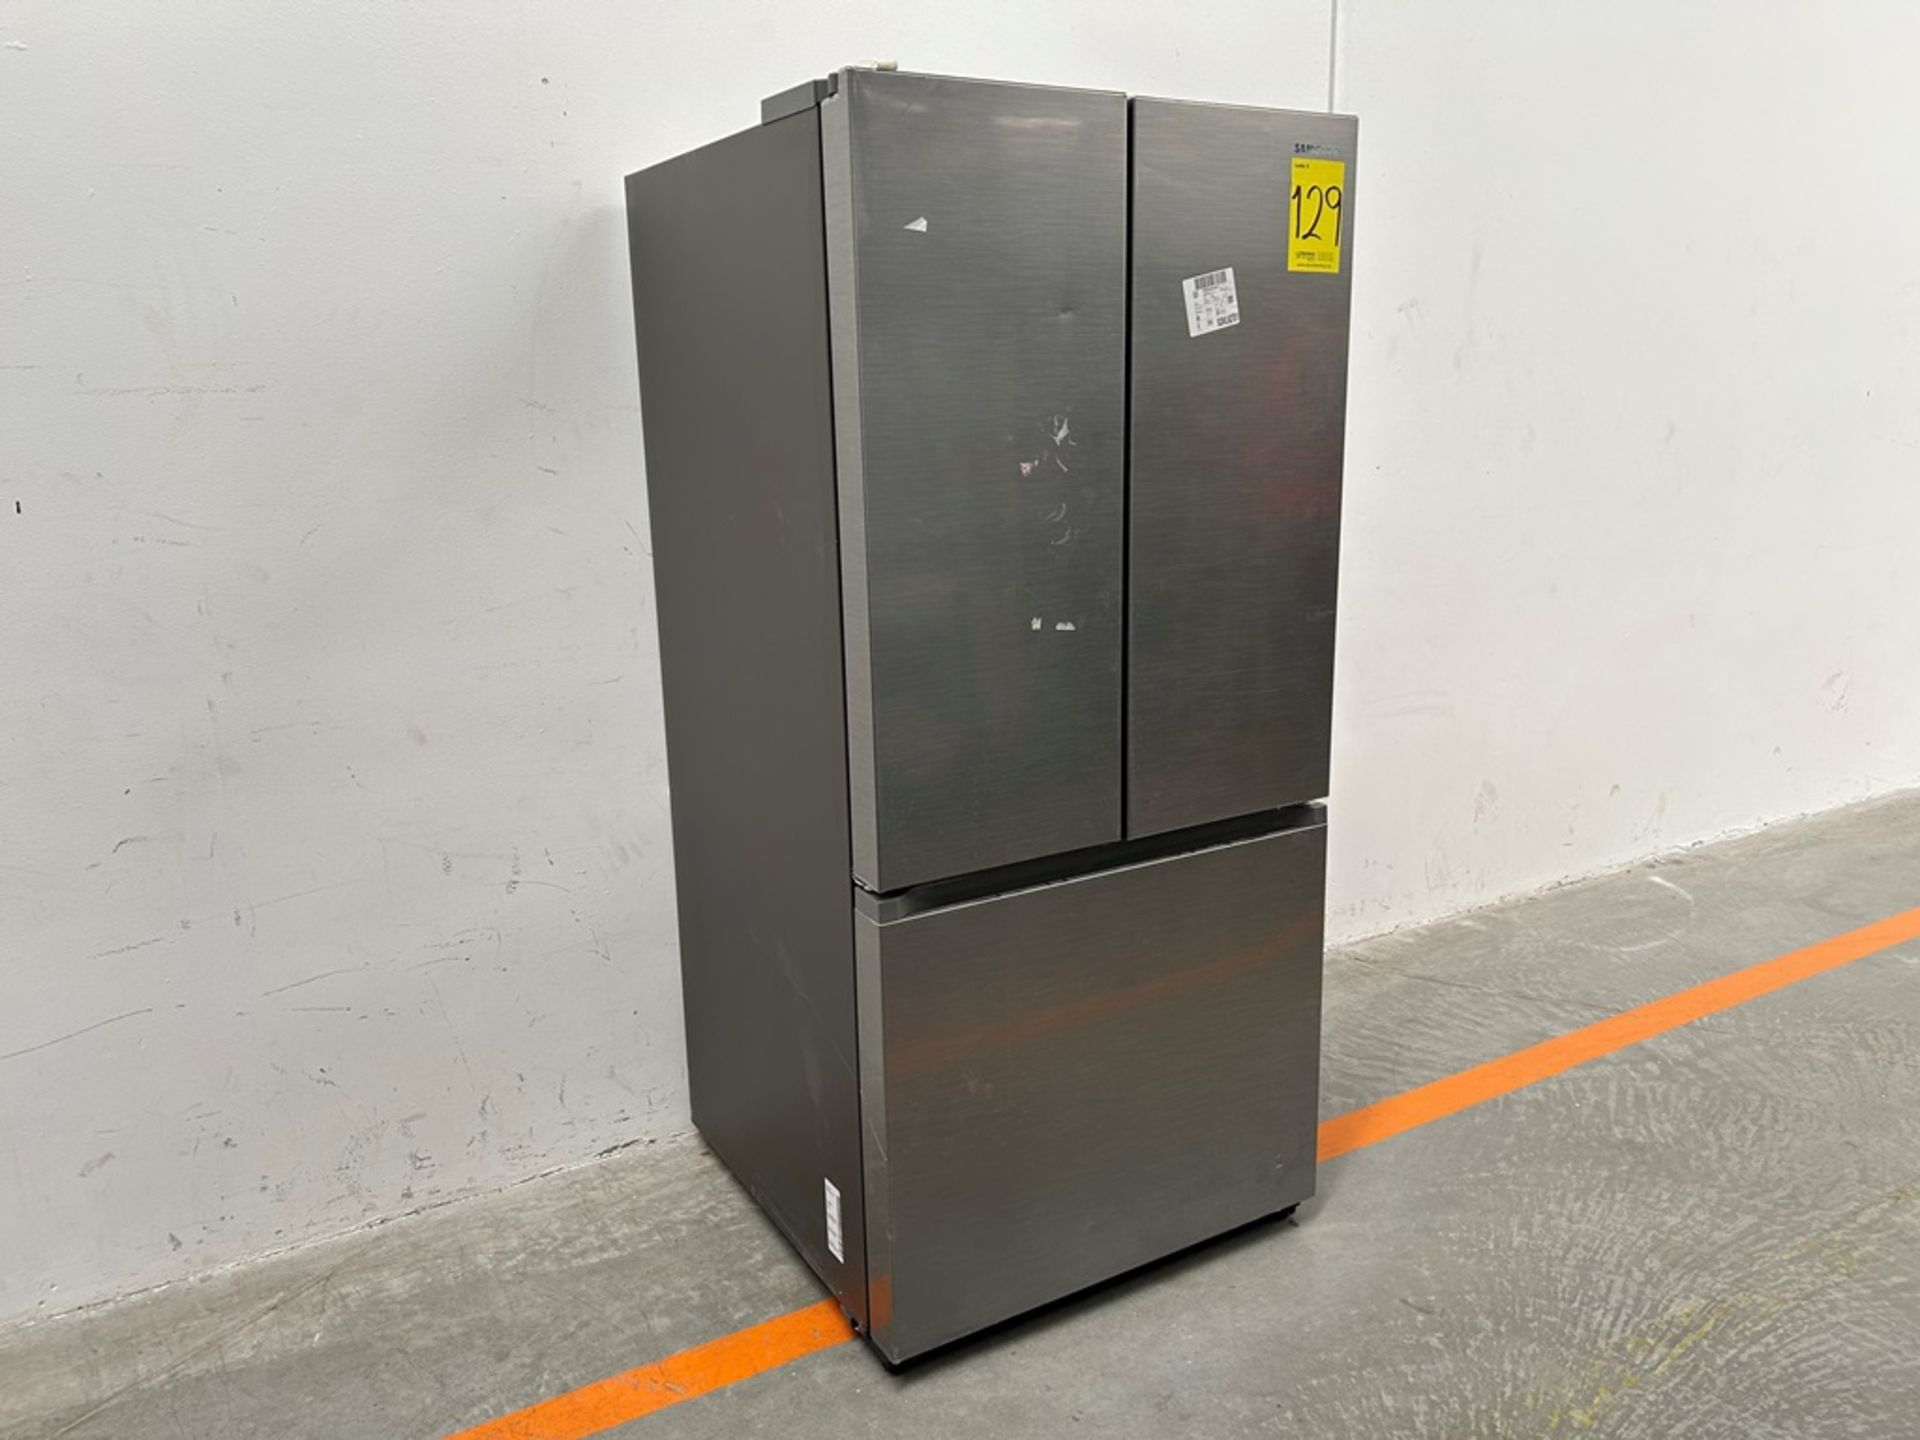 (NUEVO) Refrigerador Marca SAMSUNG, Modelo RF25C5151S9, Serie 100036K, Color GRIS - Image 2 of 7